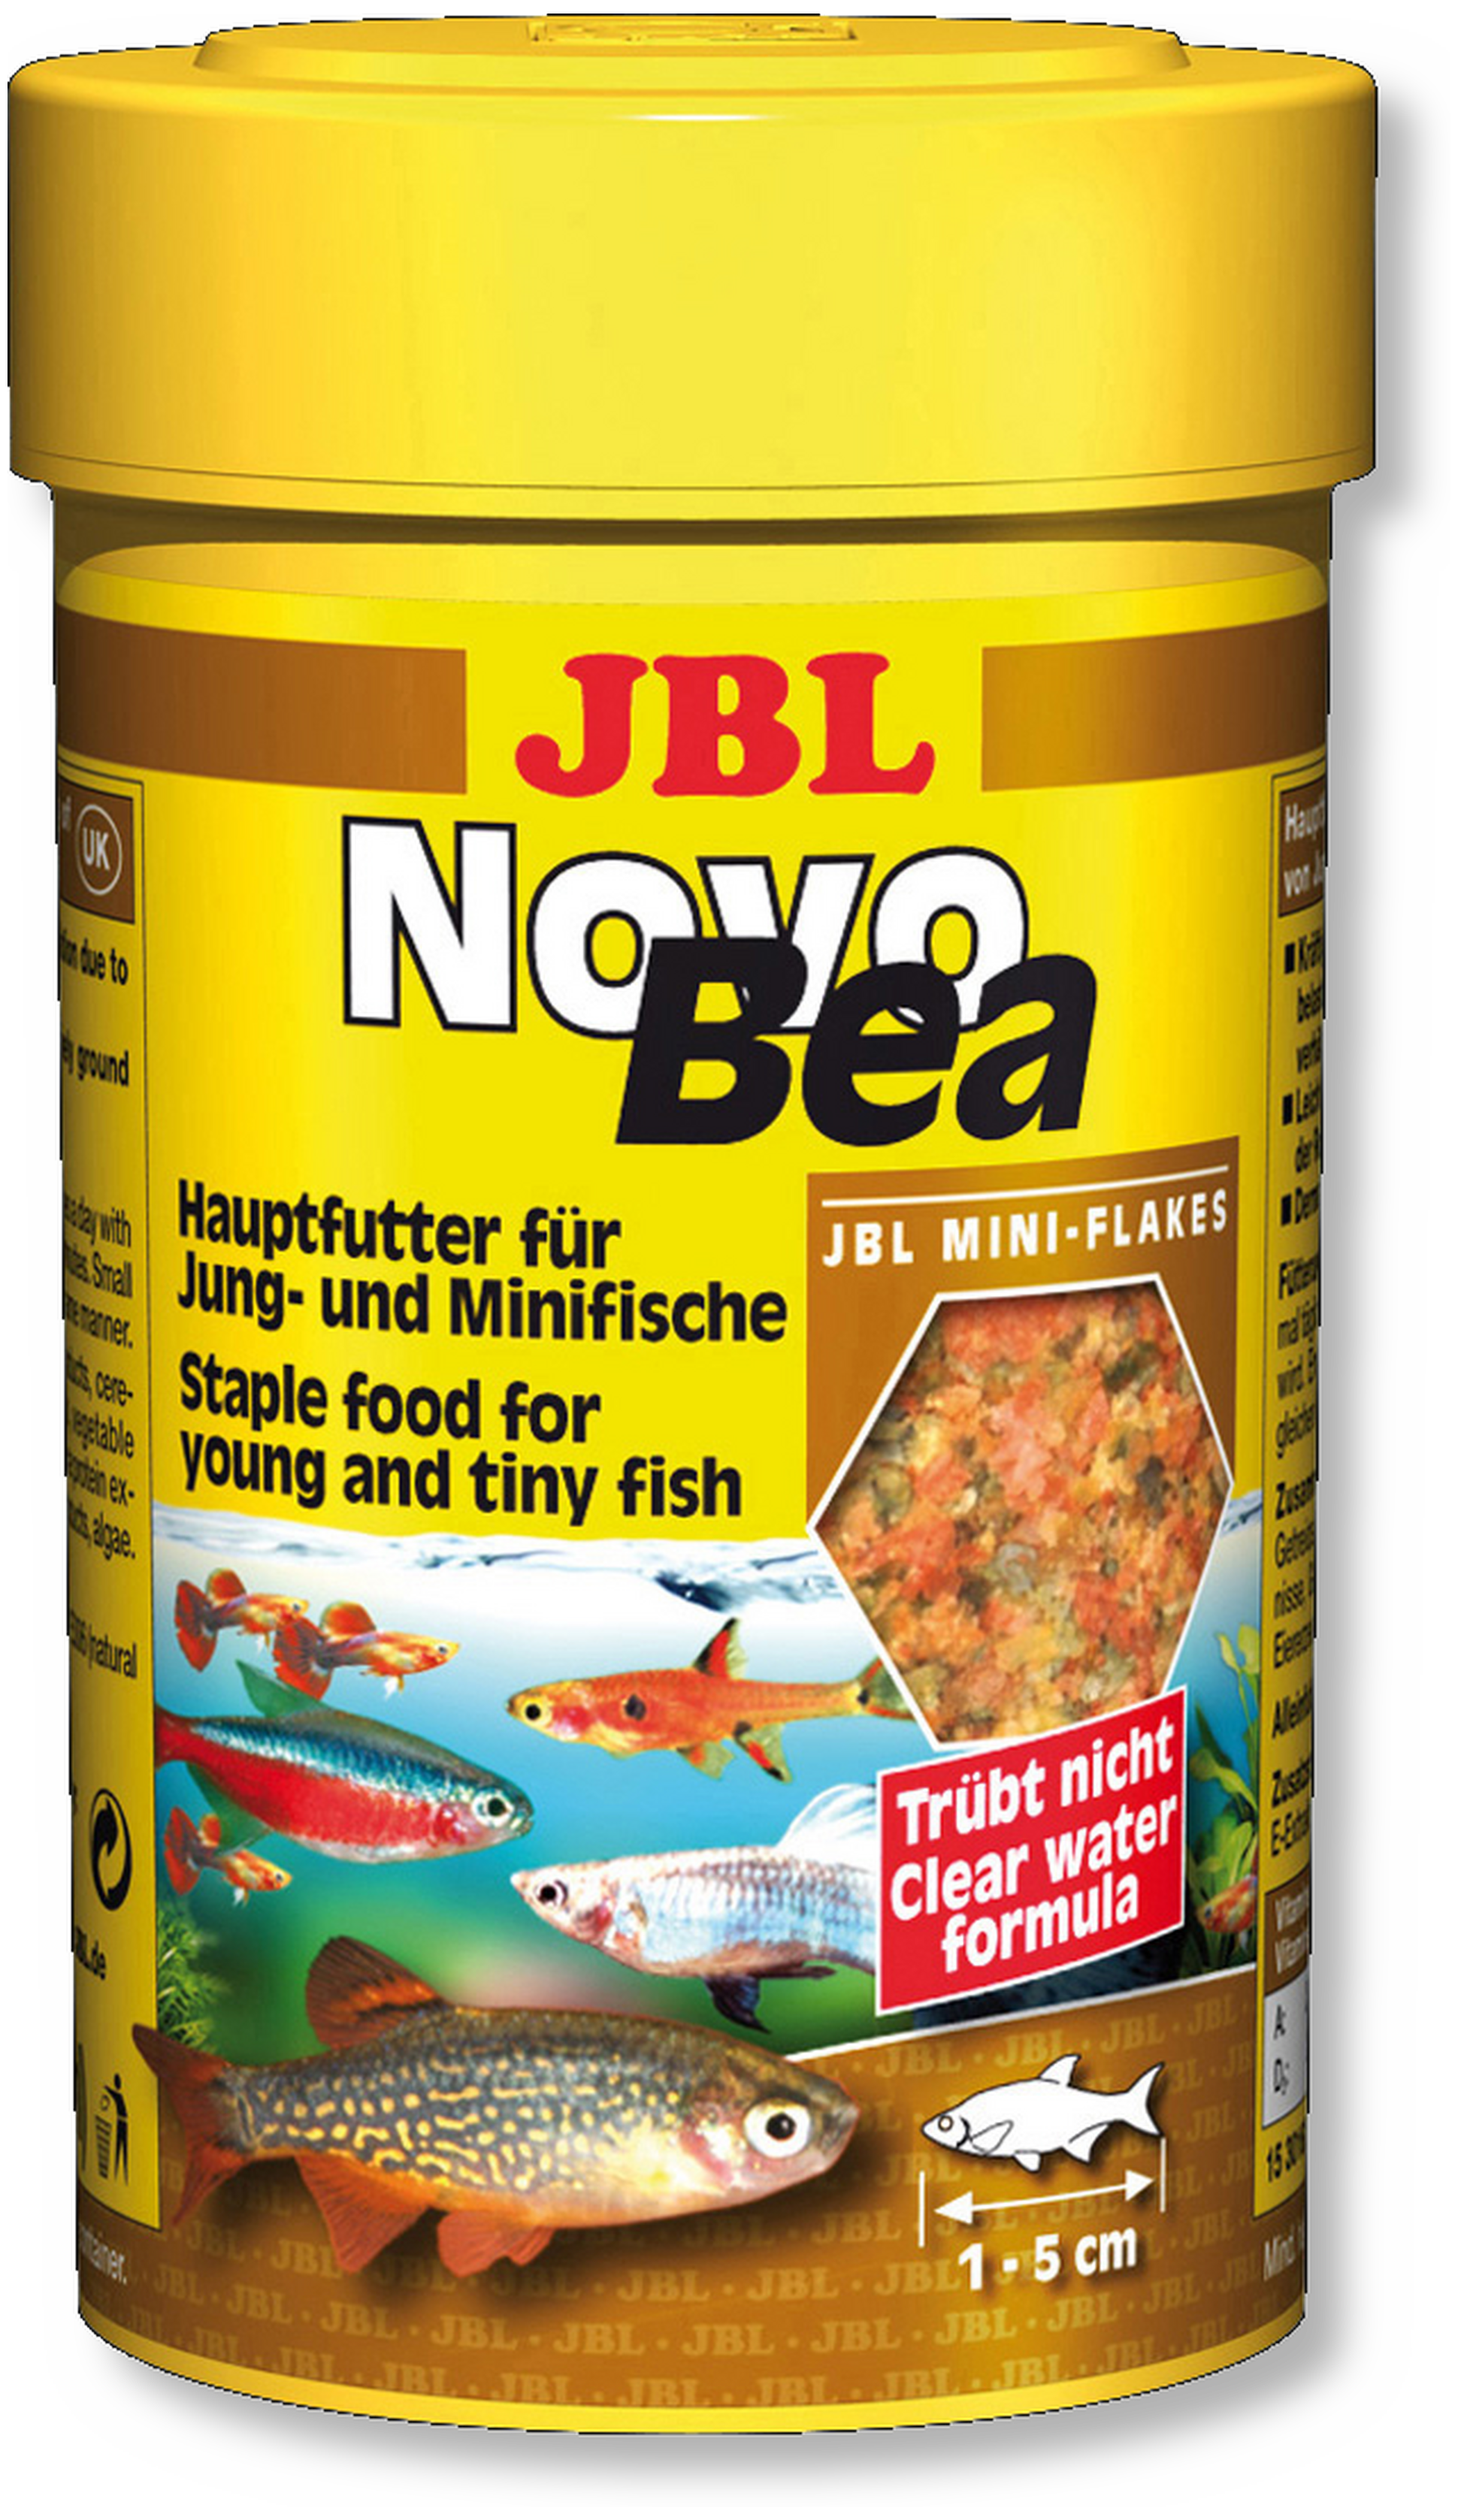 JBL NovoBea